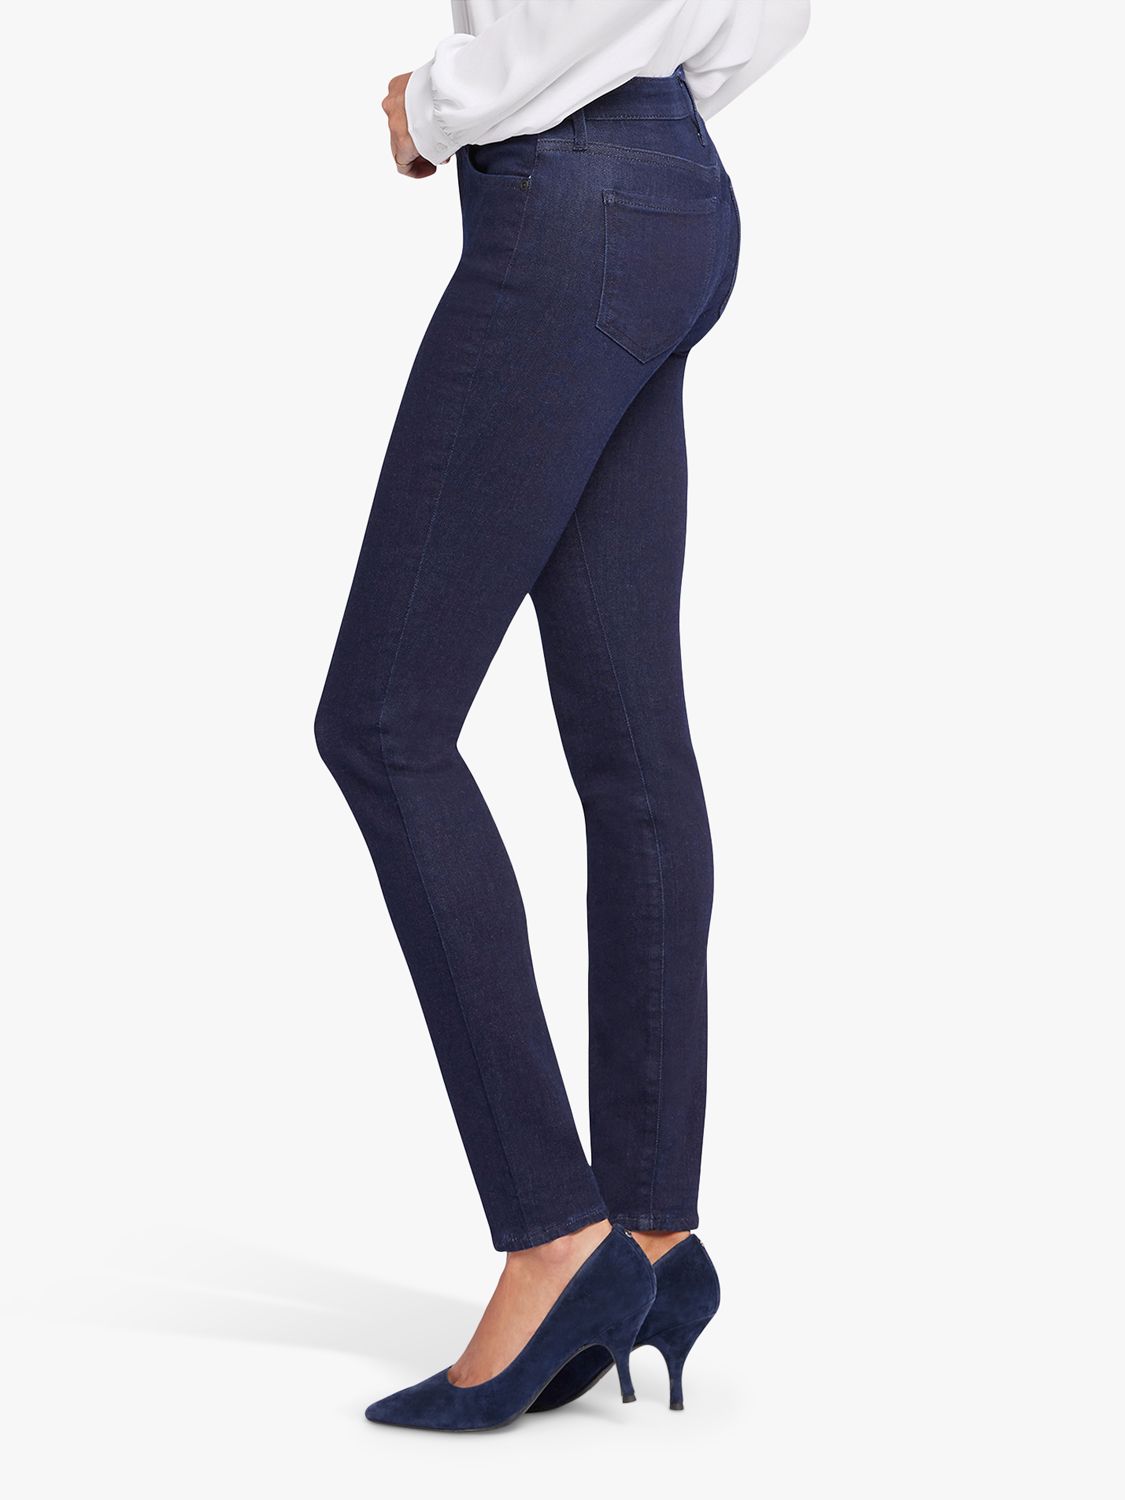 NYDJ Women's Ami High Waist Welt Pocket Ankle Skinny Jeans Grey Size 2 